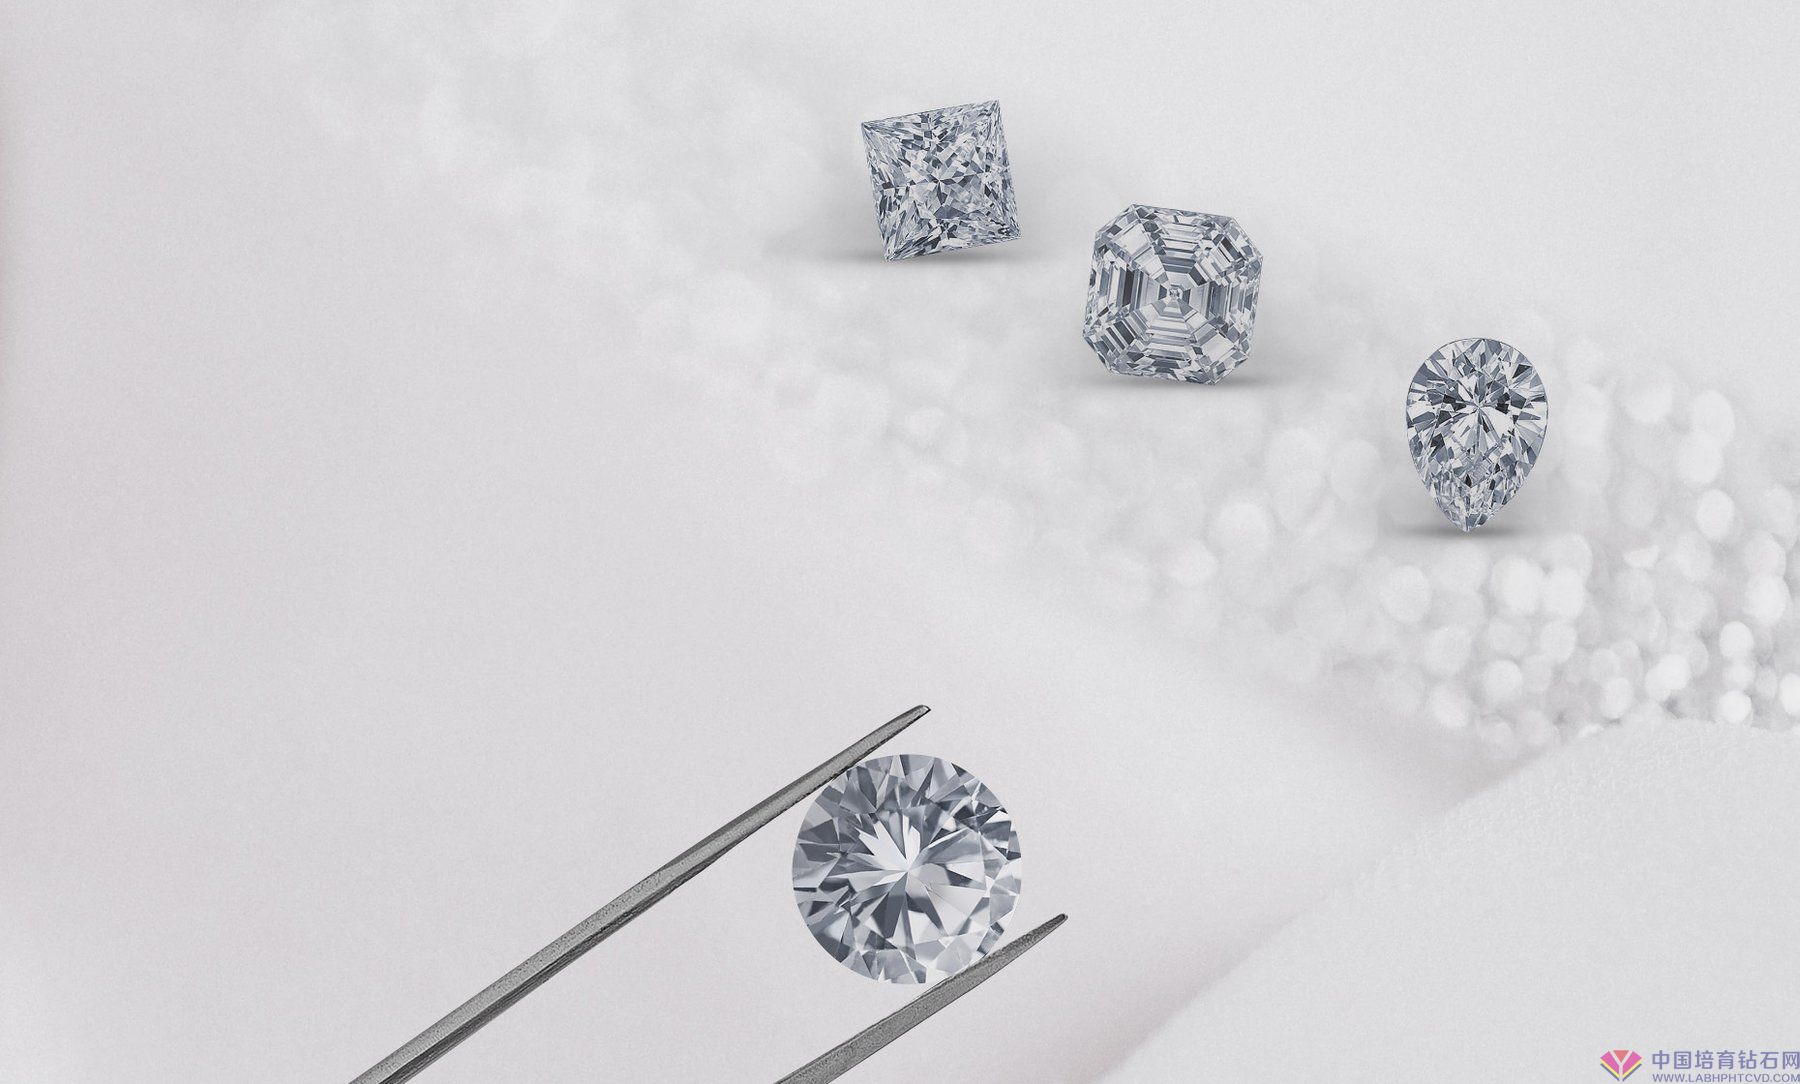 消费者购买培育钻石的七大疑问